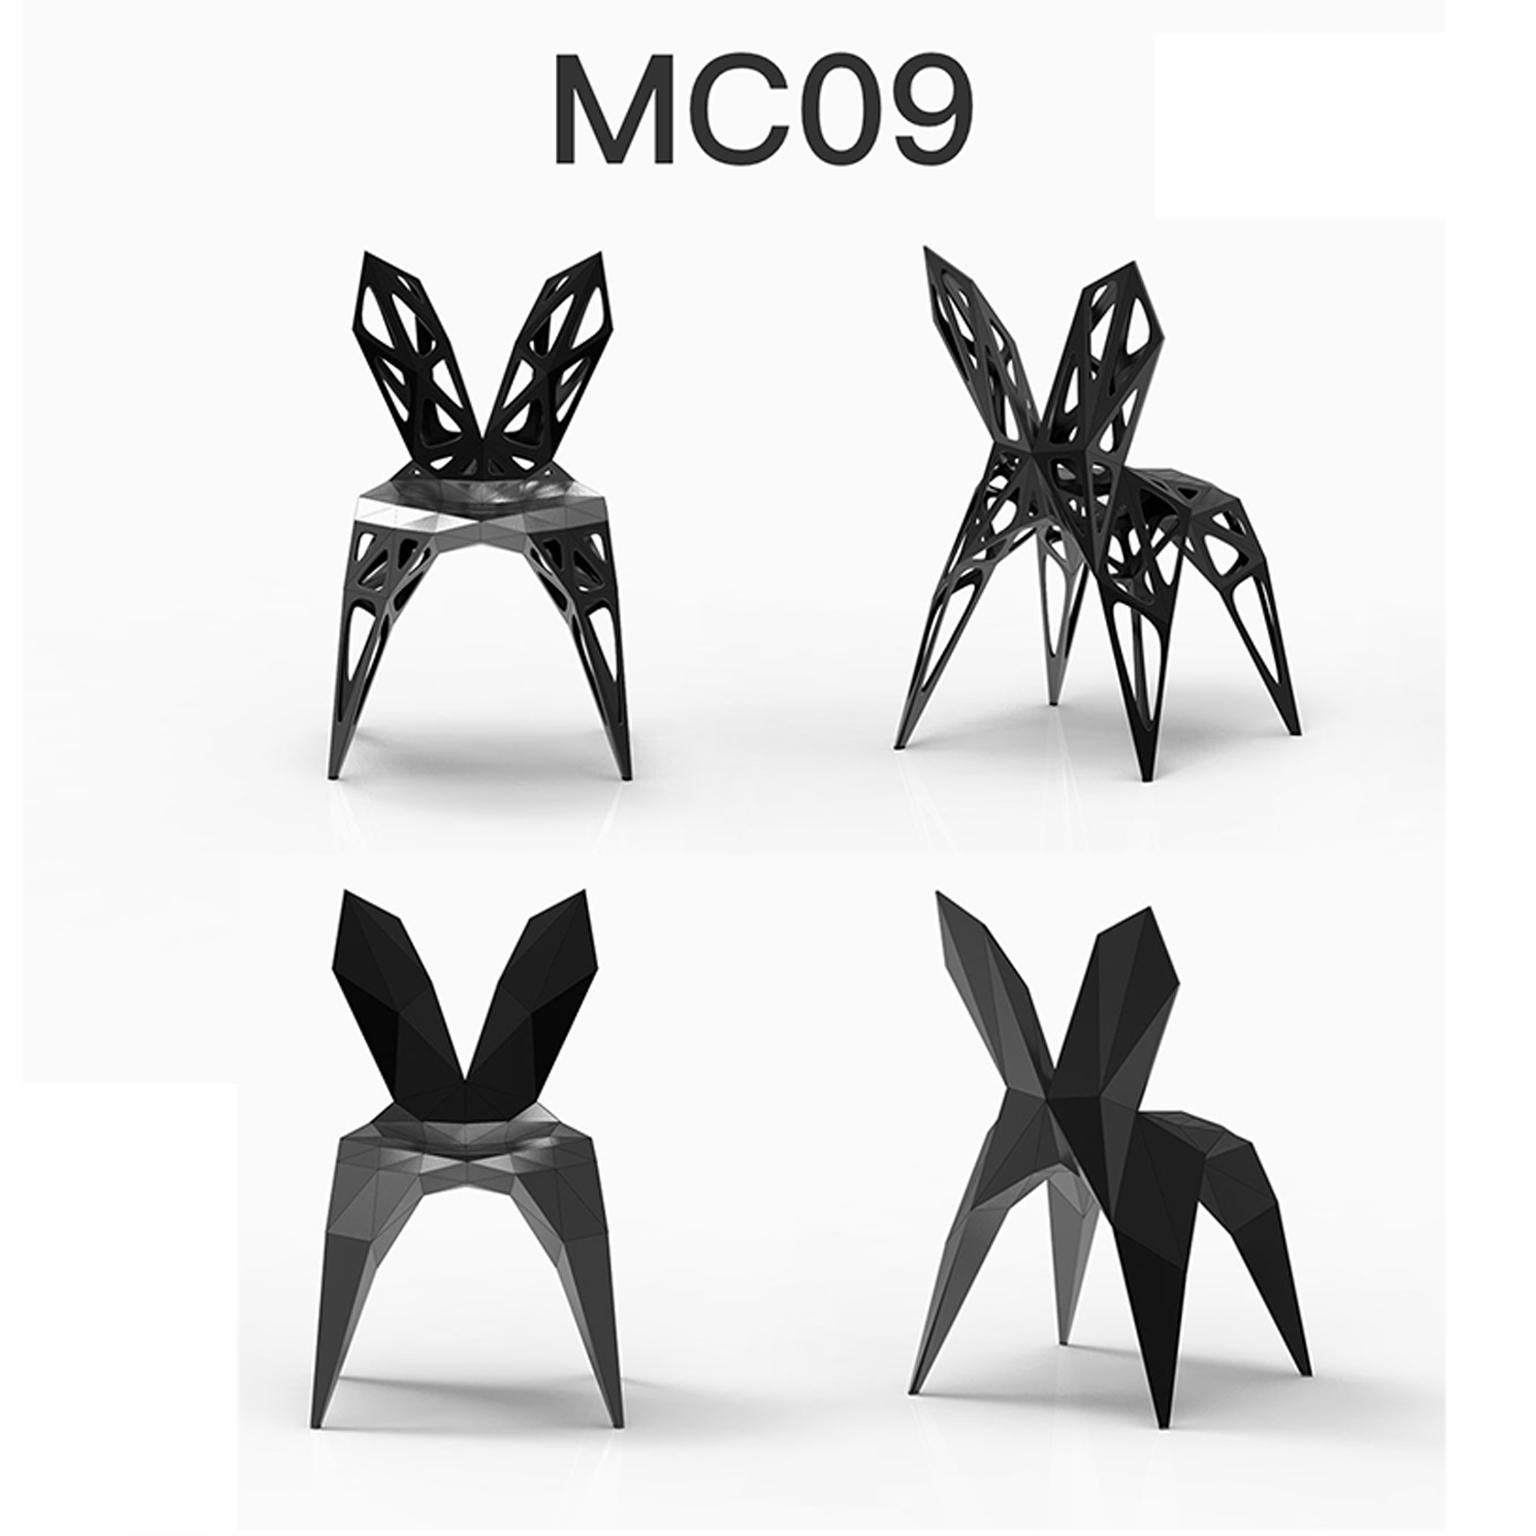 Draußen und drinnen
4 offizielle Typen von Stühlen oder verfügbar
solide
punkte
rahmen
2 Farben offiziell oder verfügbar oder Ausführung in poliert oder matt
schwarz
silber

Der Möbeldesigner Zhoujie Zhang ist bekannt für die Integration